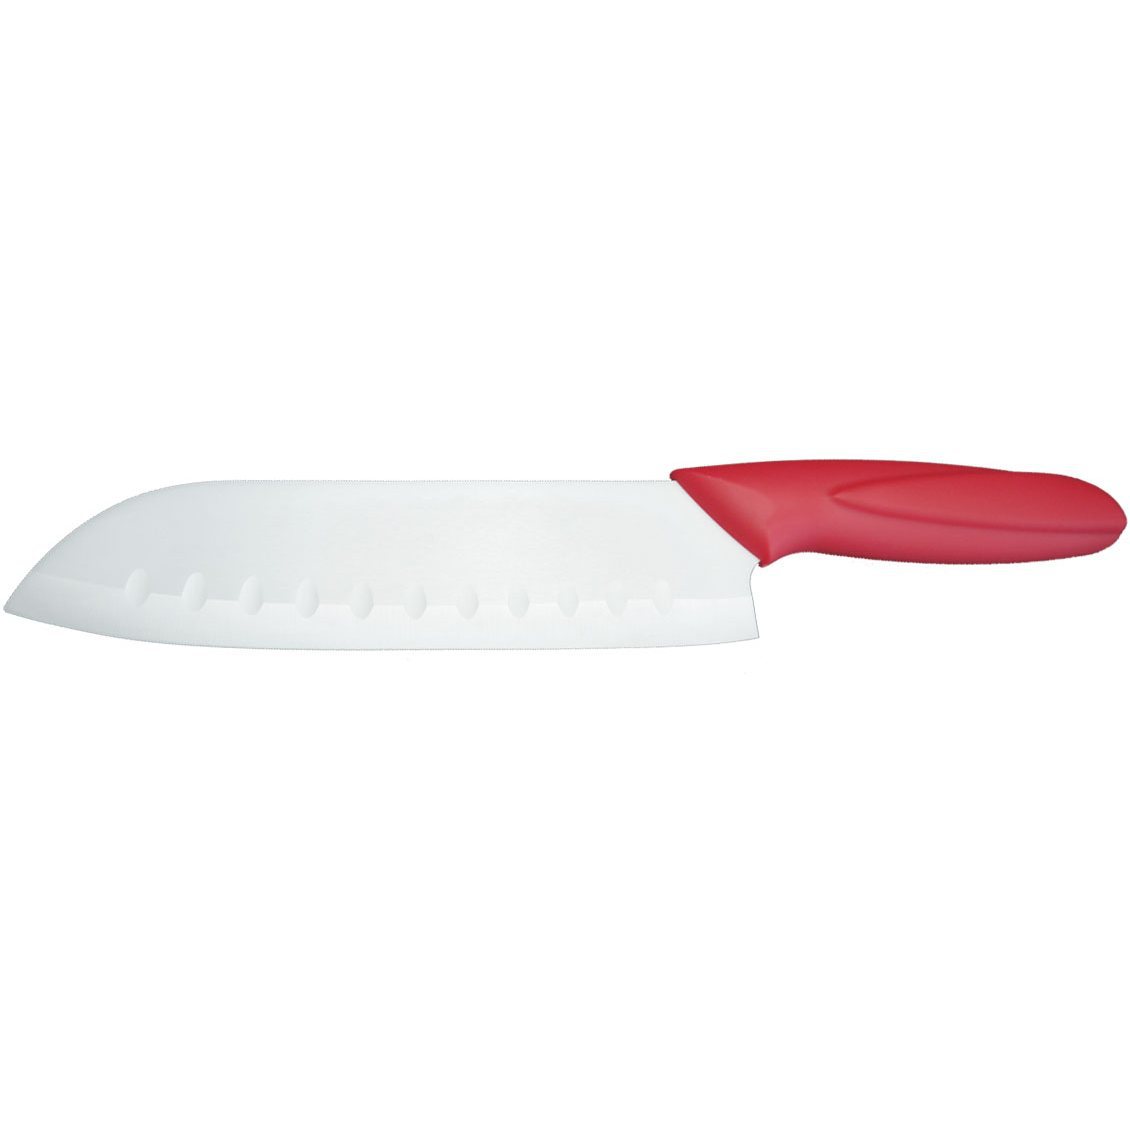 Нож керамический кухонный японский SAME SANTOKU 7, красный